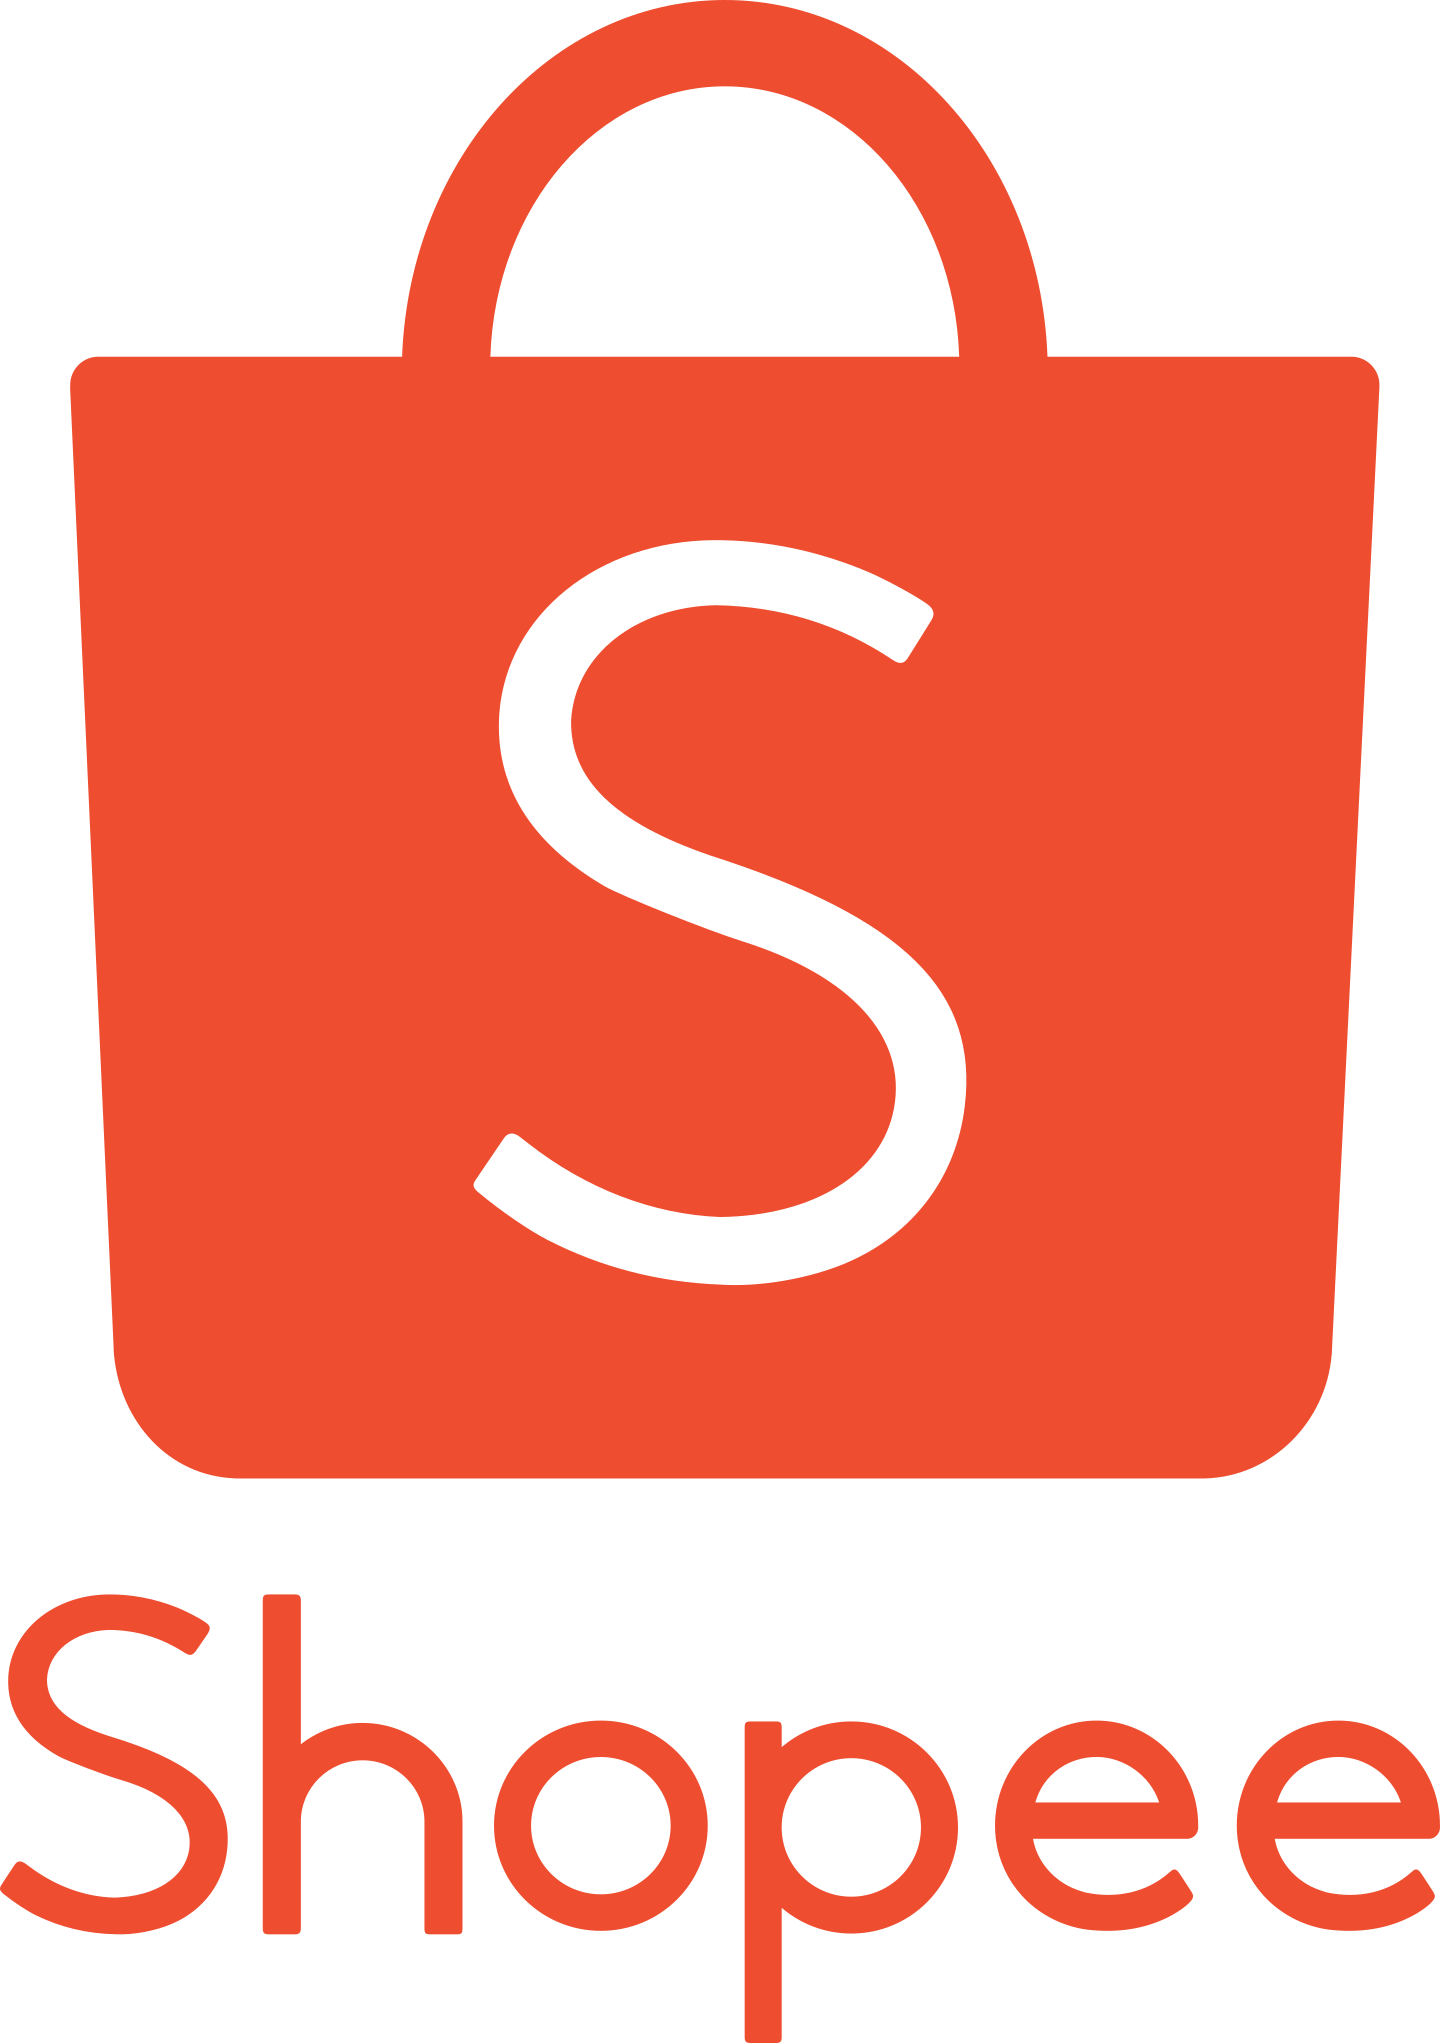 shopee logo 3 - Shopee Logo